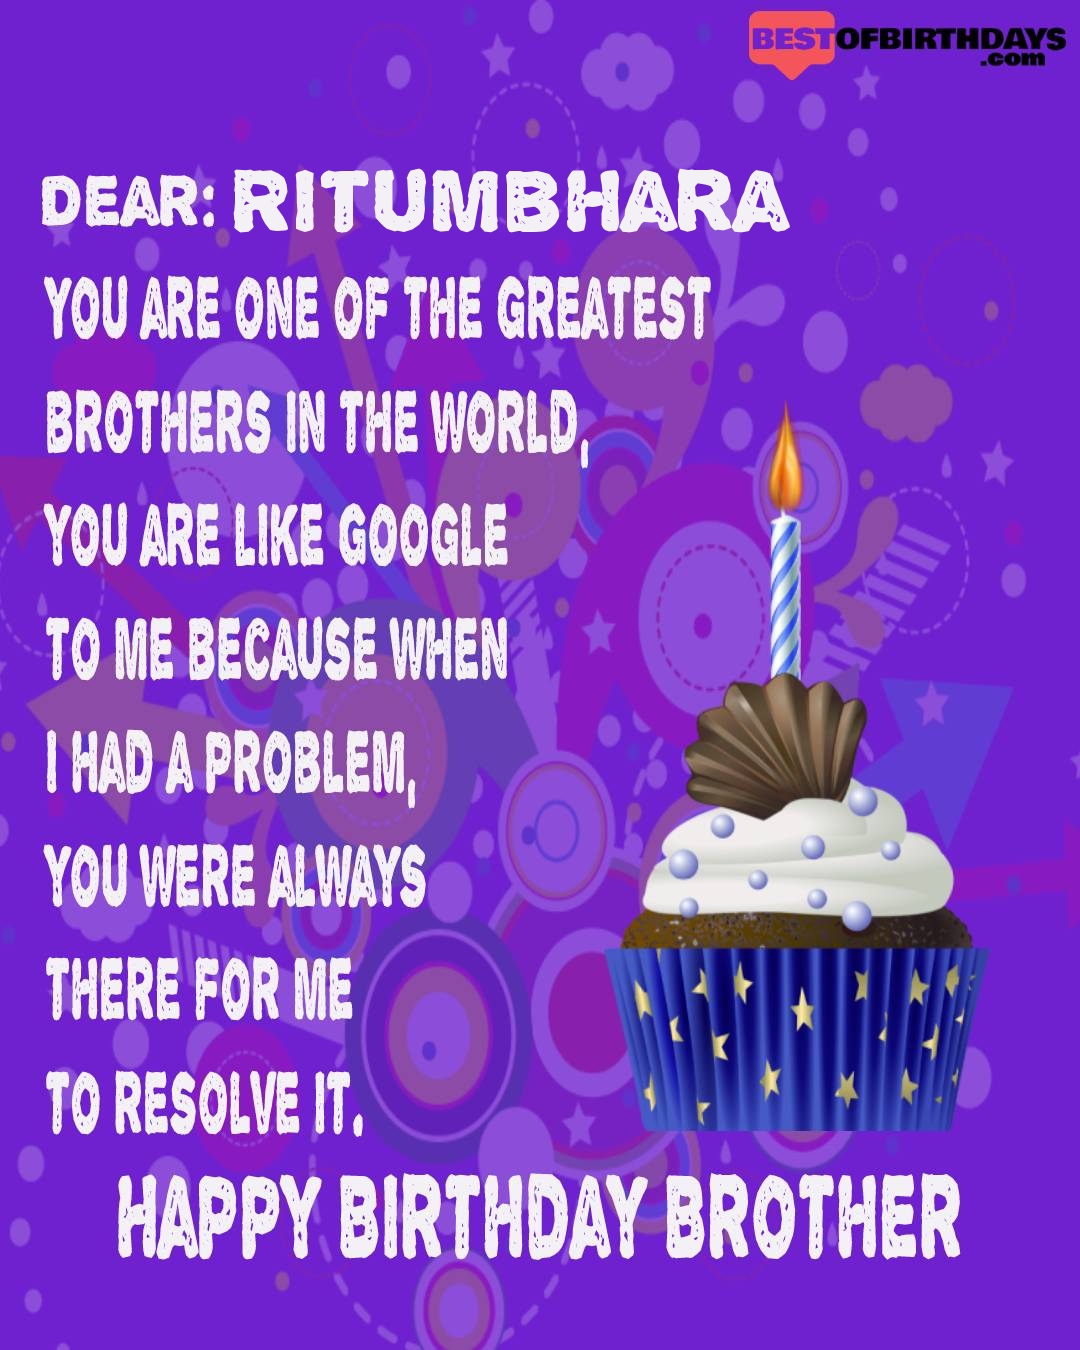 Happy birthday ritumbhara bhai brother bro